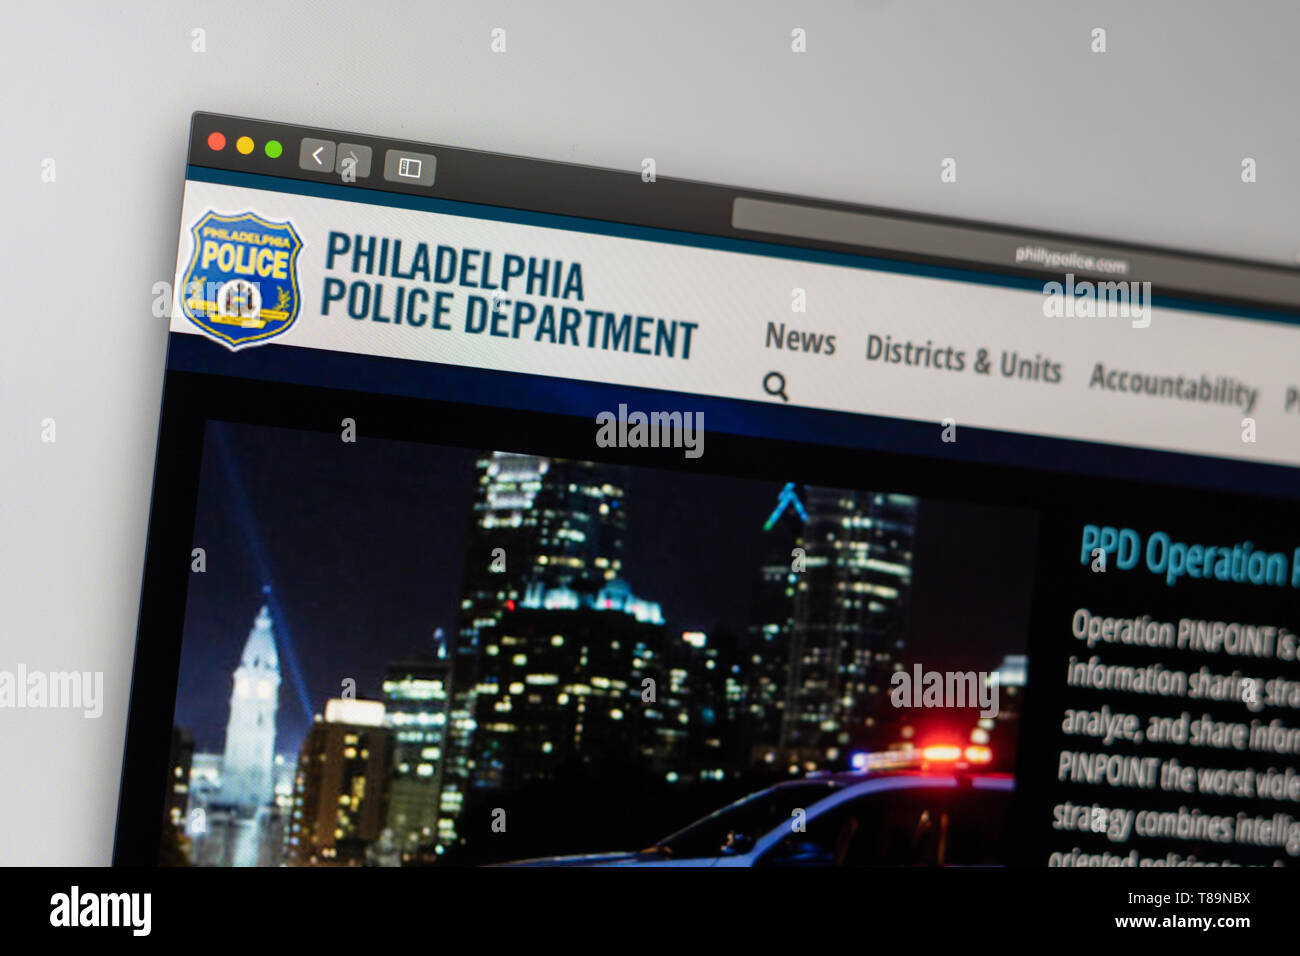 Miami/USA, 05.11.2019: Polizei von Philadelphia Homepage. In der Nähe von Polizei Dept Logo. Kann als illustrative für Nachrichtenmedien oder verwendet werden. Stockfoto